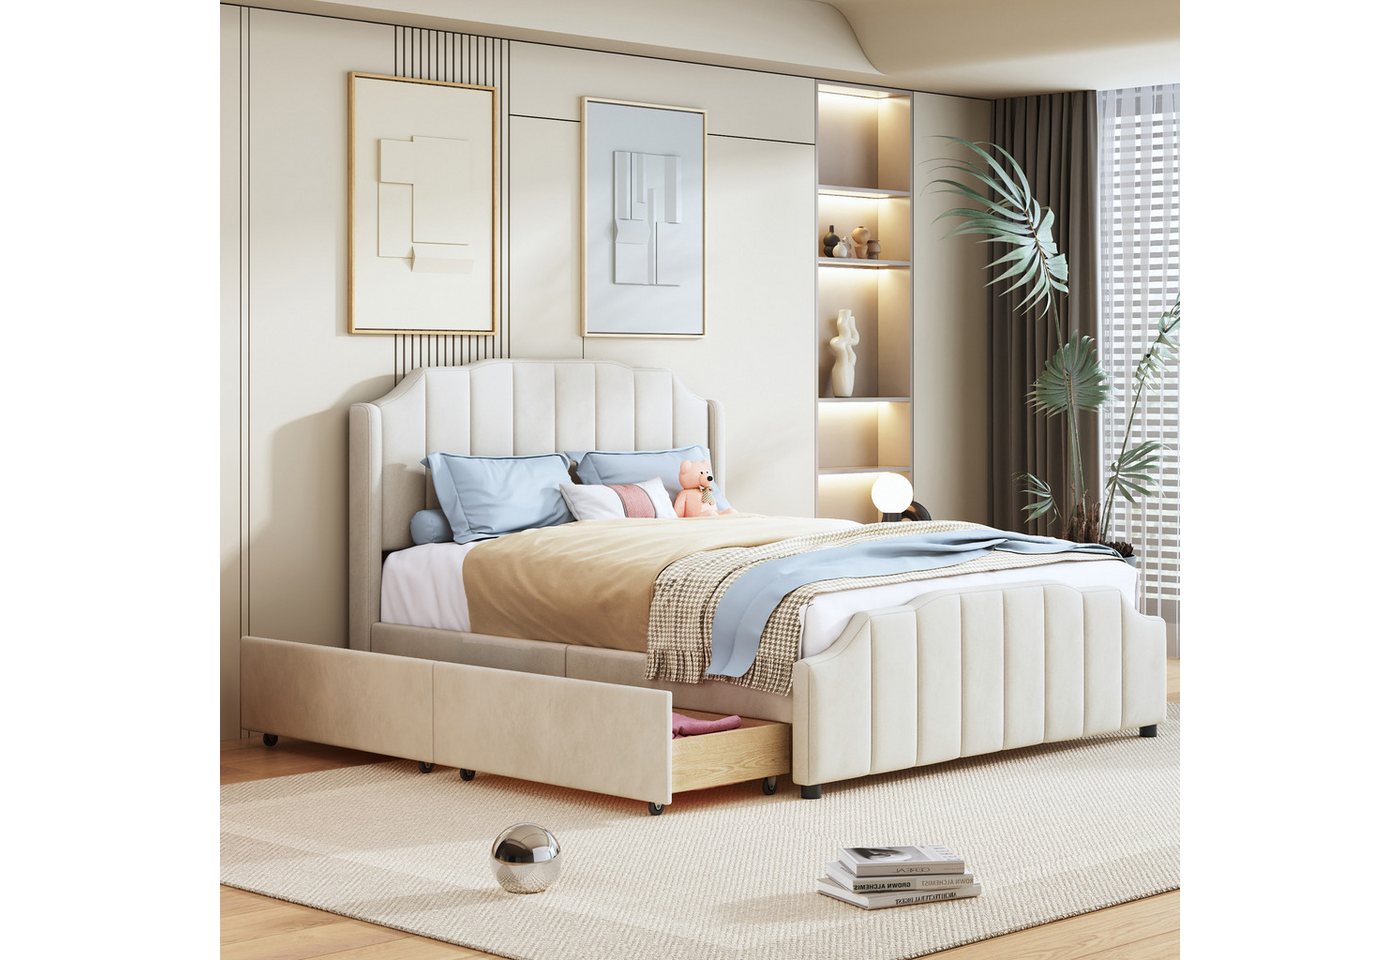 IDEASY Polsterbett Mit Samt gepolstertes Plattformbett, 2 ausziehbare Schubladen, beige/rosa/grau, 140 x 200 cm,hochwertige Holzlatten, geräuschlos von IDEASY